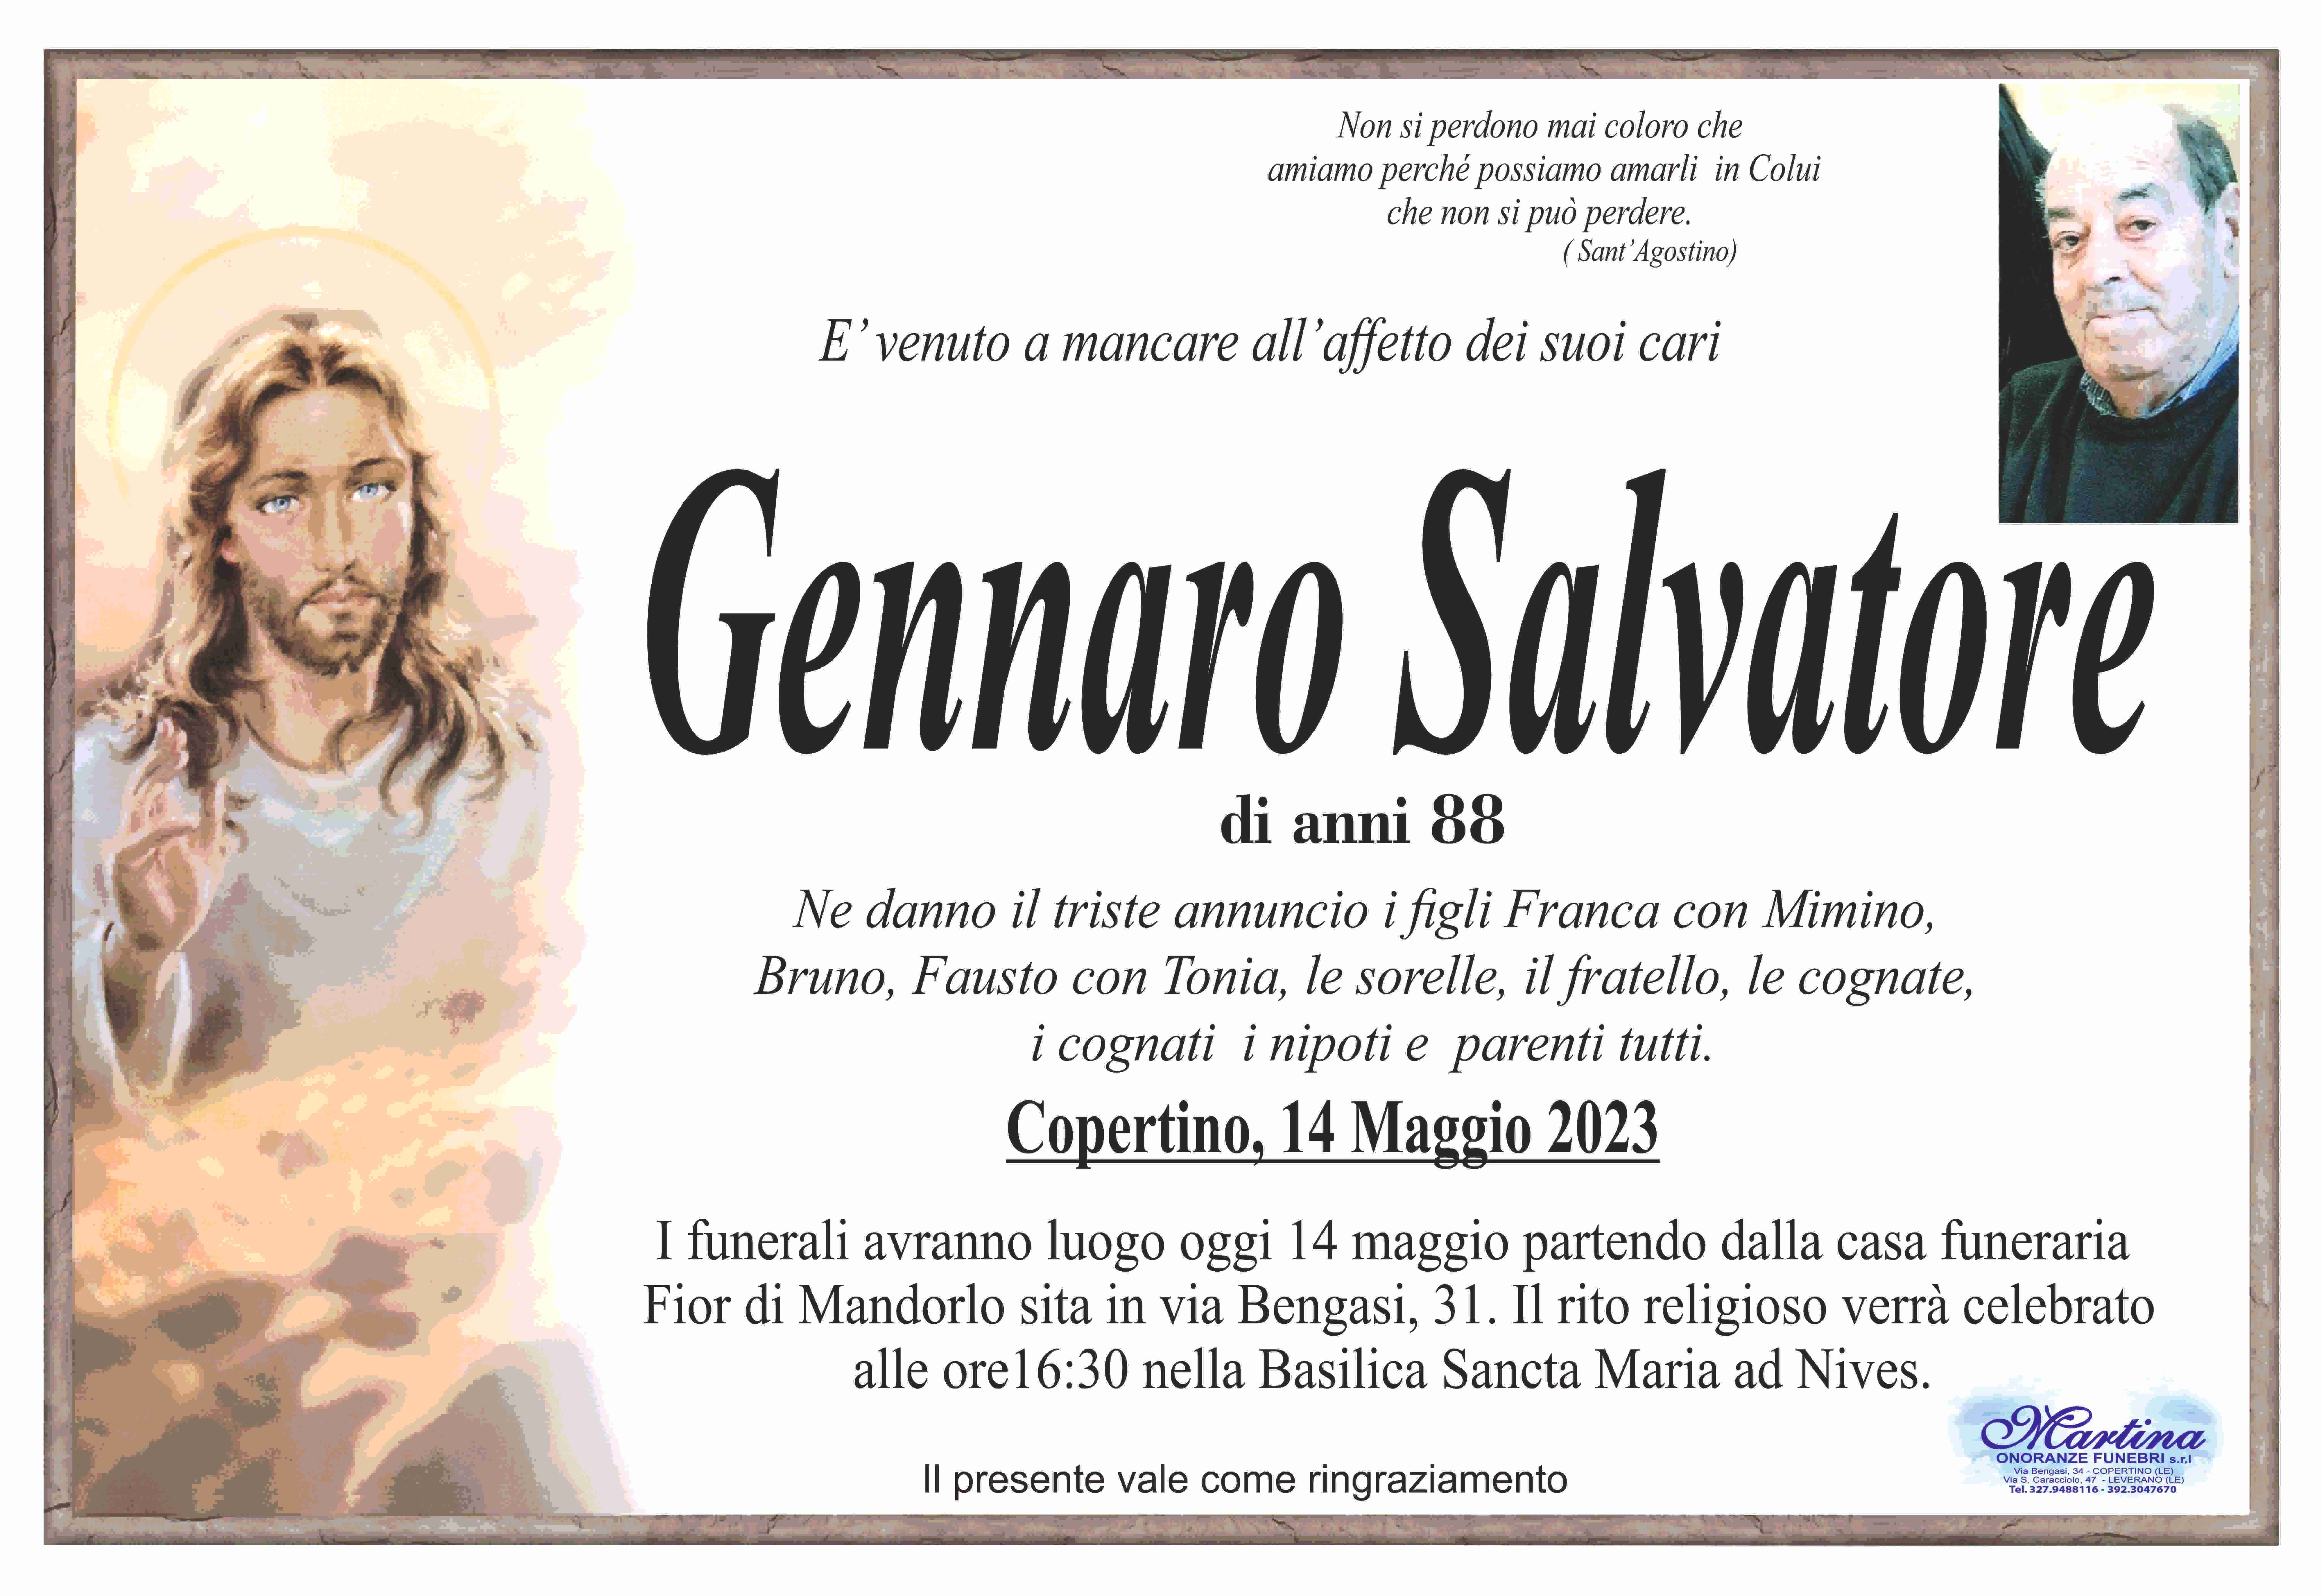 Salvatore Gennaro